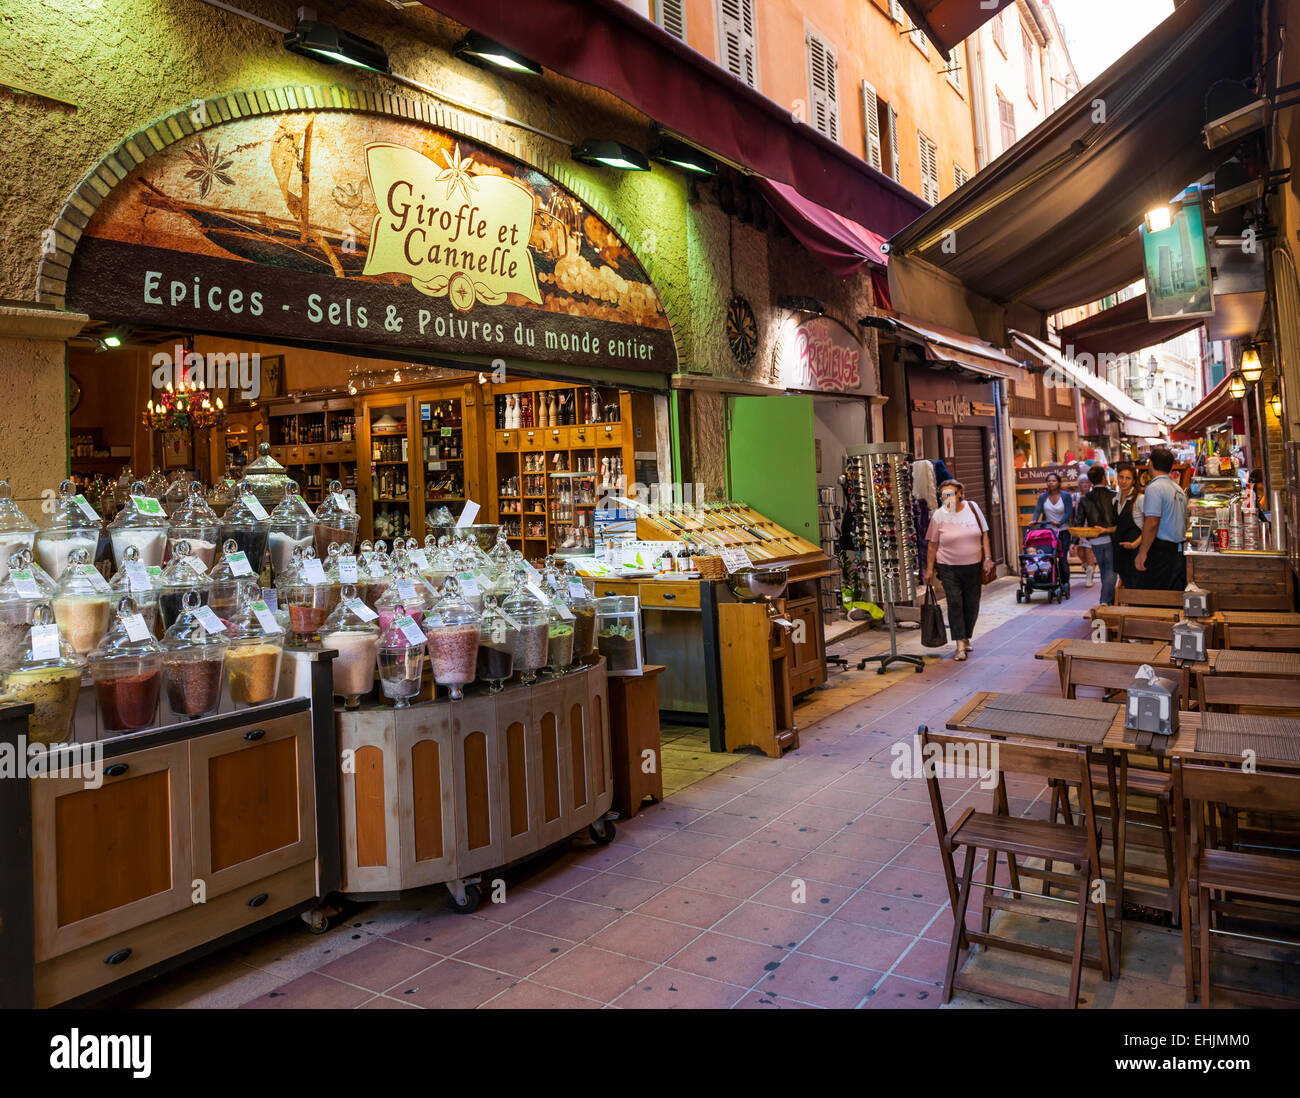 Nizza, Frankreich - 2. Oktober 2014: Feinkostladen "Girofle et Cannelle" auf Rue Pairoliere, einer malerischen Fußgängerzone. Stockfoto